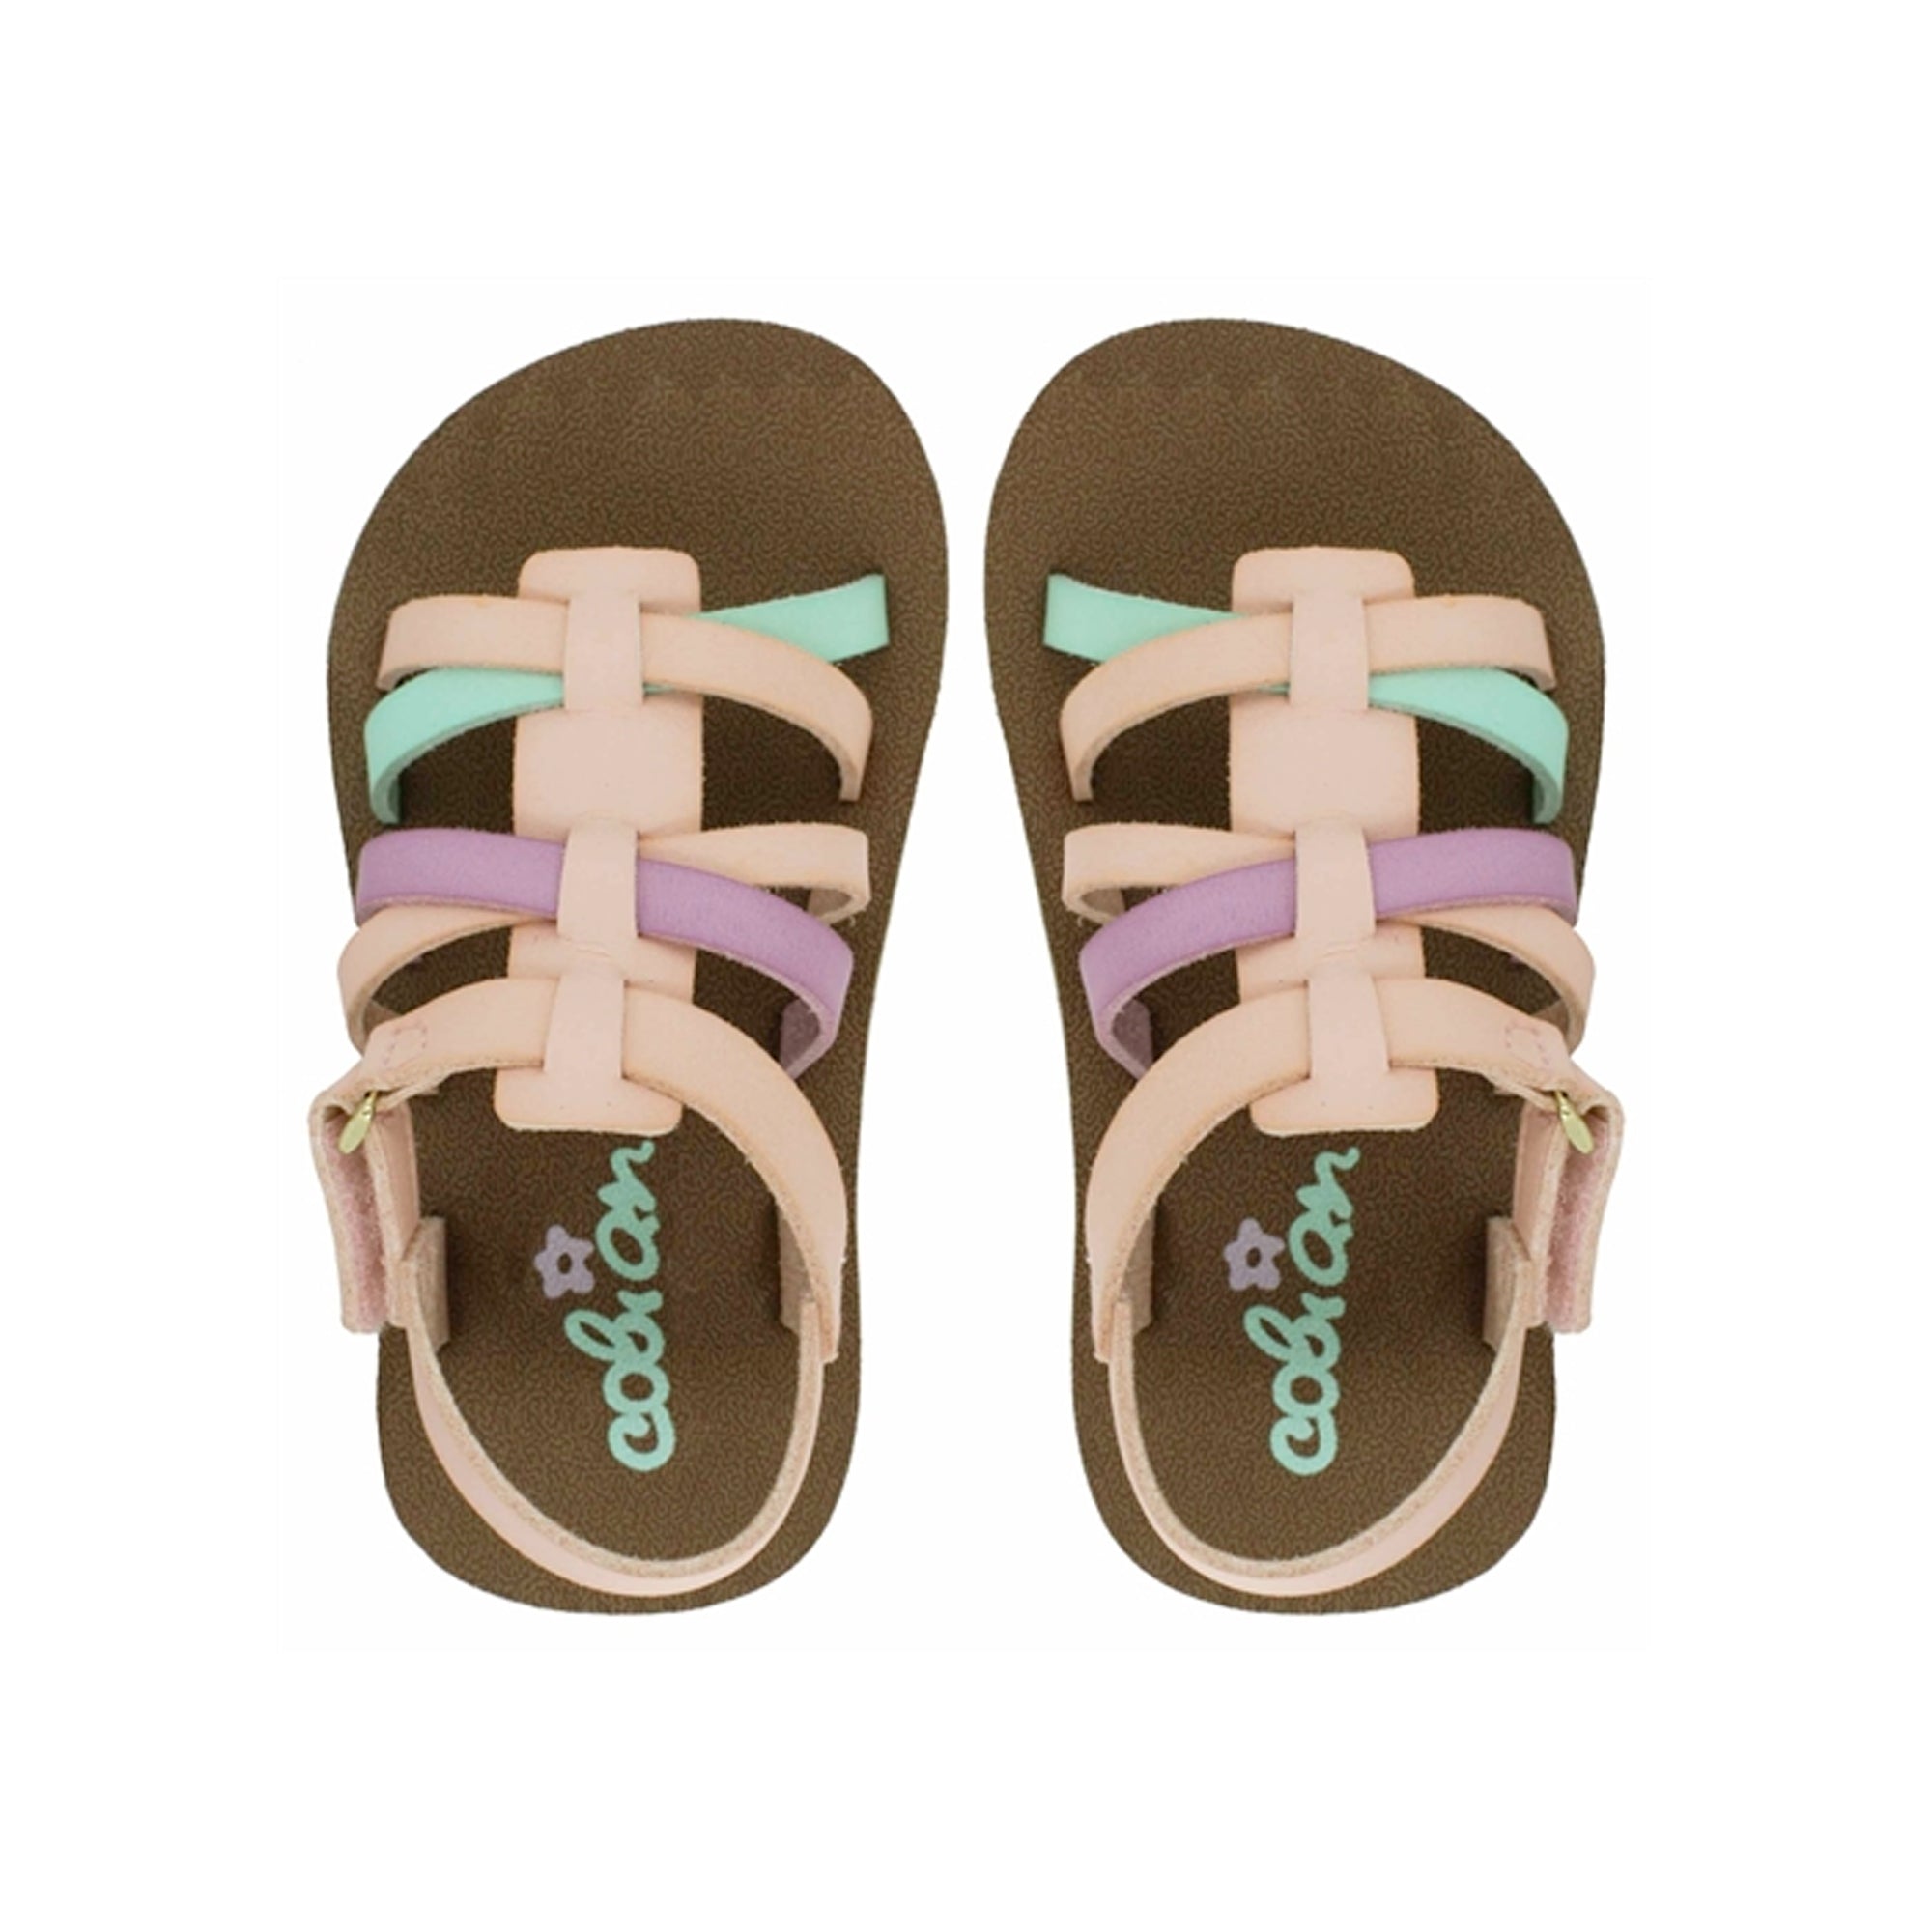 Cobian Sophia Toddler Girl's Sandals